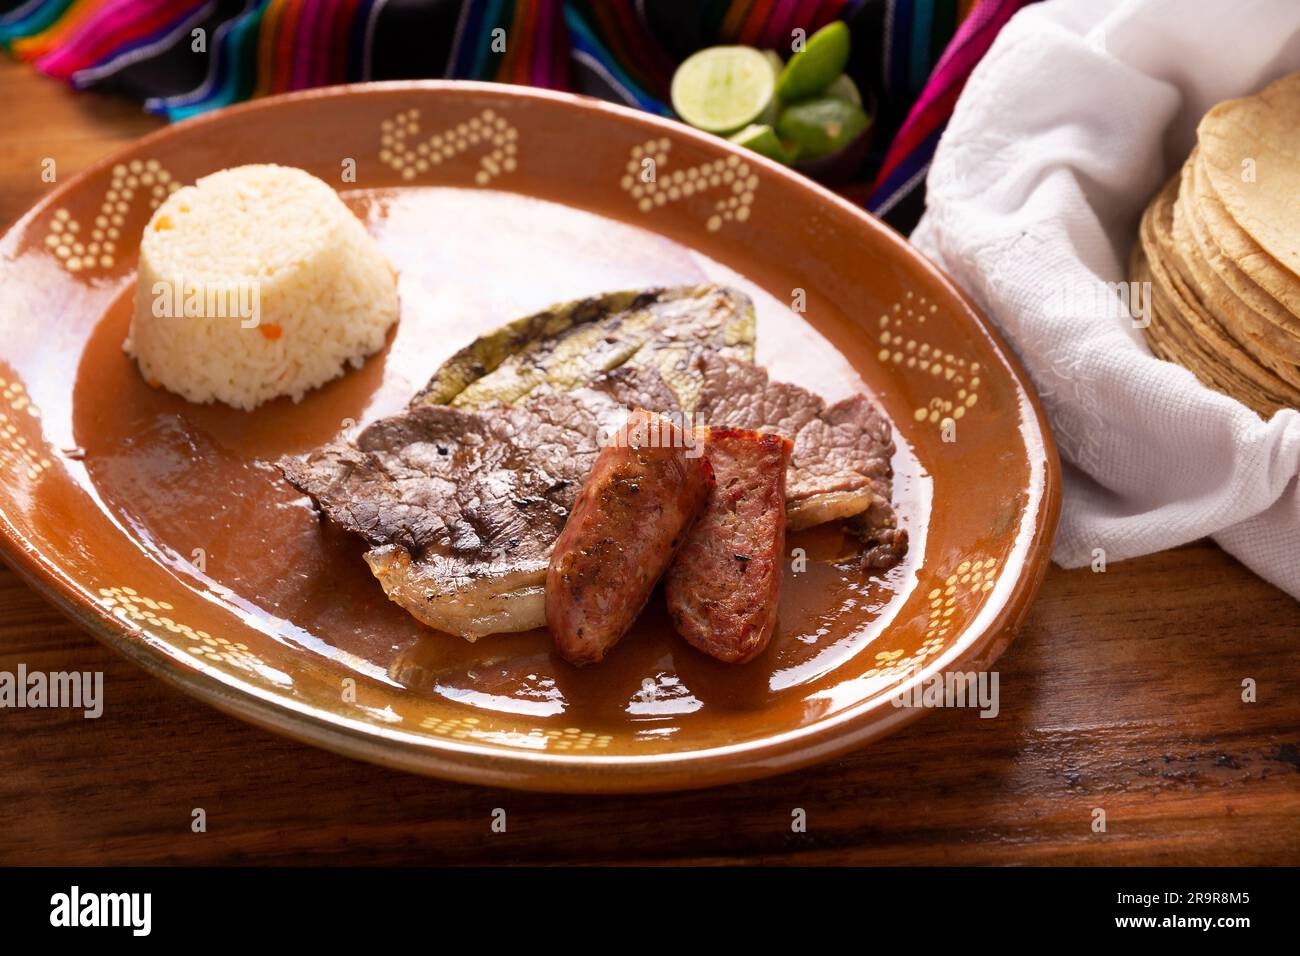 Viande rôtie avec cactus nopal rôtis et saucisse de porc appelée chorizo, accompagnée de riz blanc servi dans une assiette typiquement mexicaine en argile. Banque D'Images